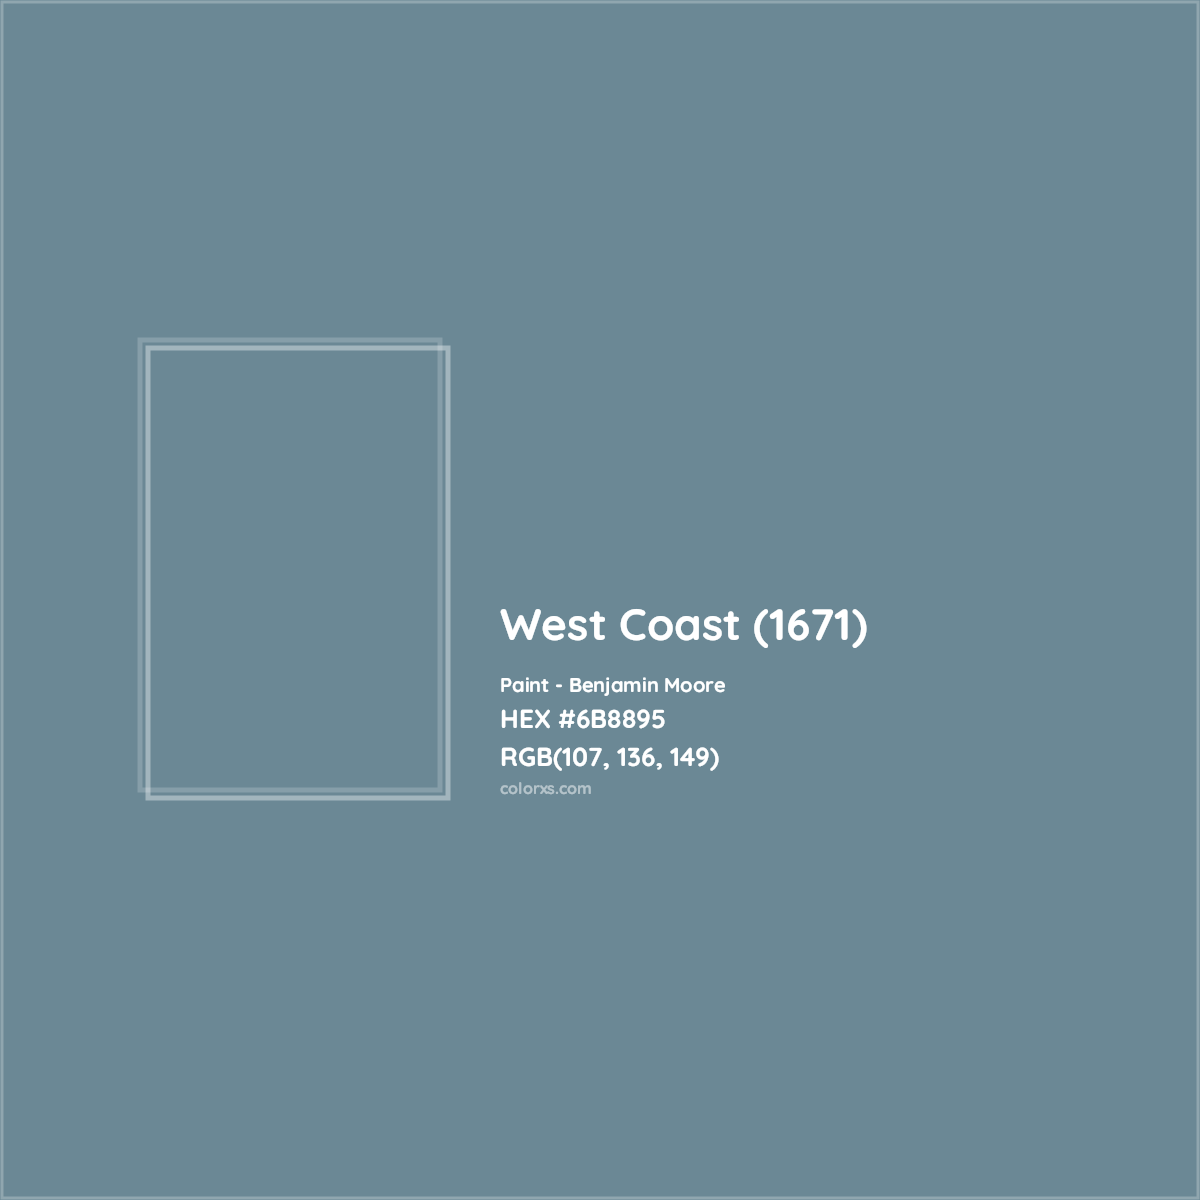 HEX #6B8895 West Coast (1671) Paint Benjamin Moore - Color Code